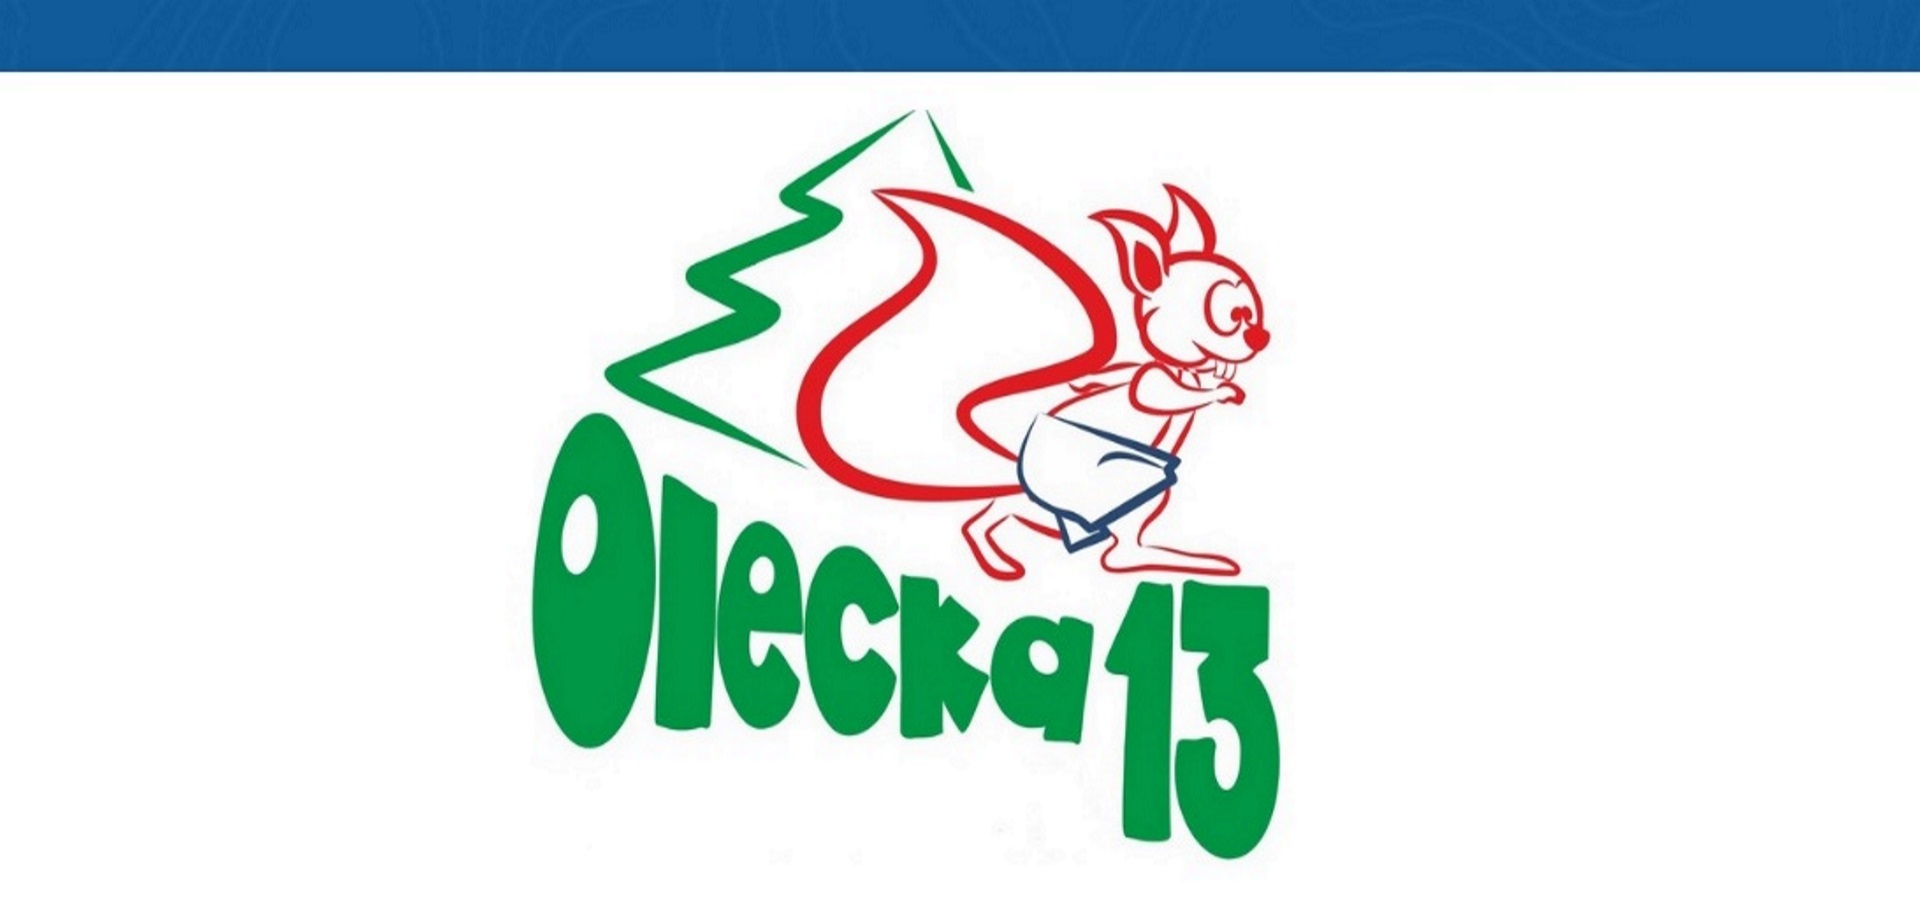 Plakat zapraszający do Olecka na 8. edycję Oleckiej Trzynastki. Grafika przedstawia napis Olecka trzynastka oraz graficzny rysunek wiewiórki.  